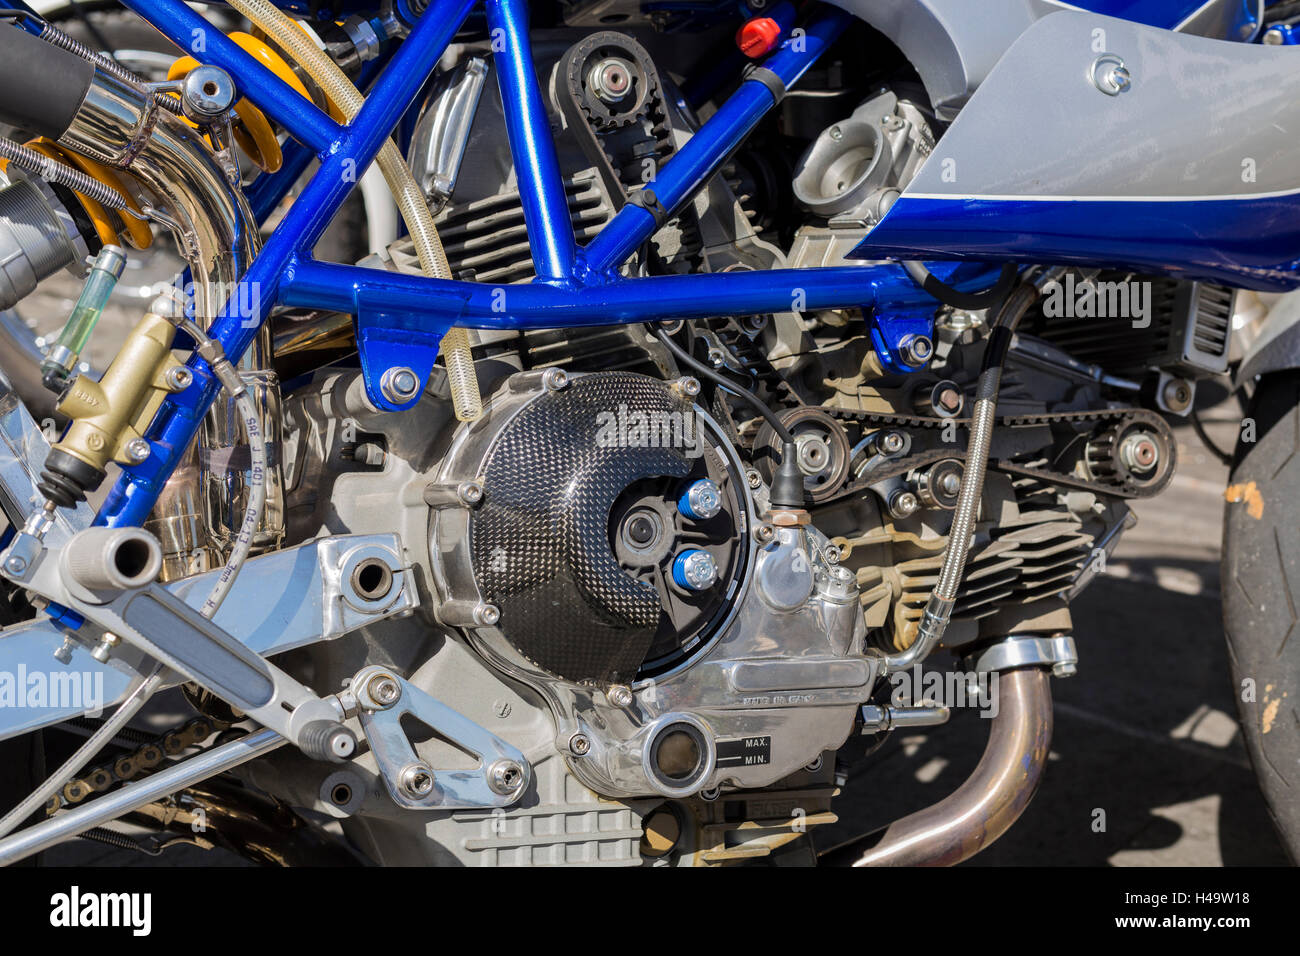 Detalle del motor y el embrague de un motor de motocicleta Ducati Desmo Foto de stock